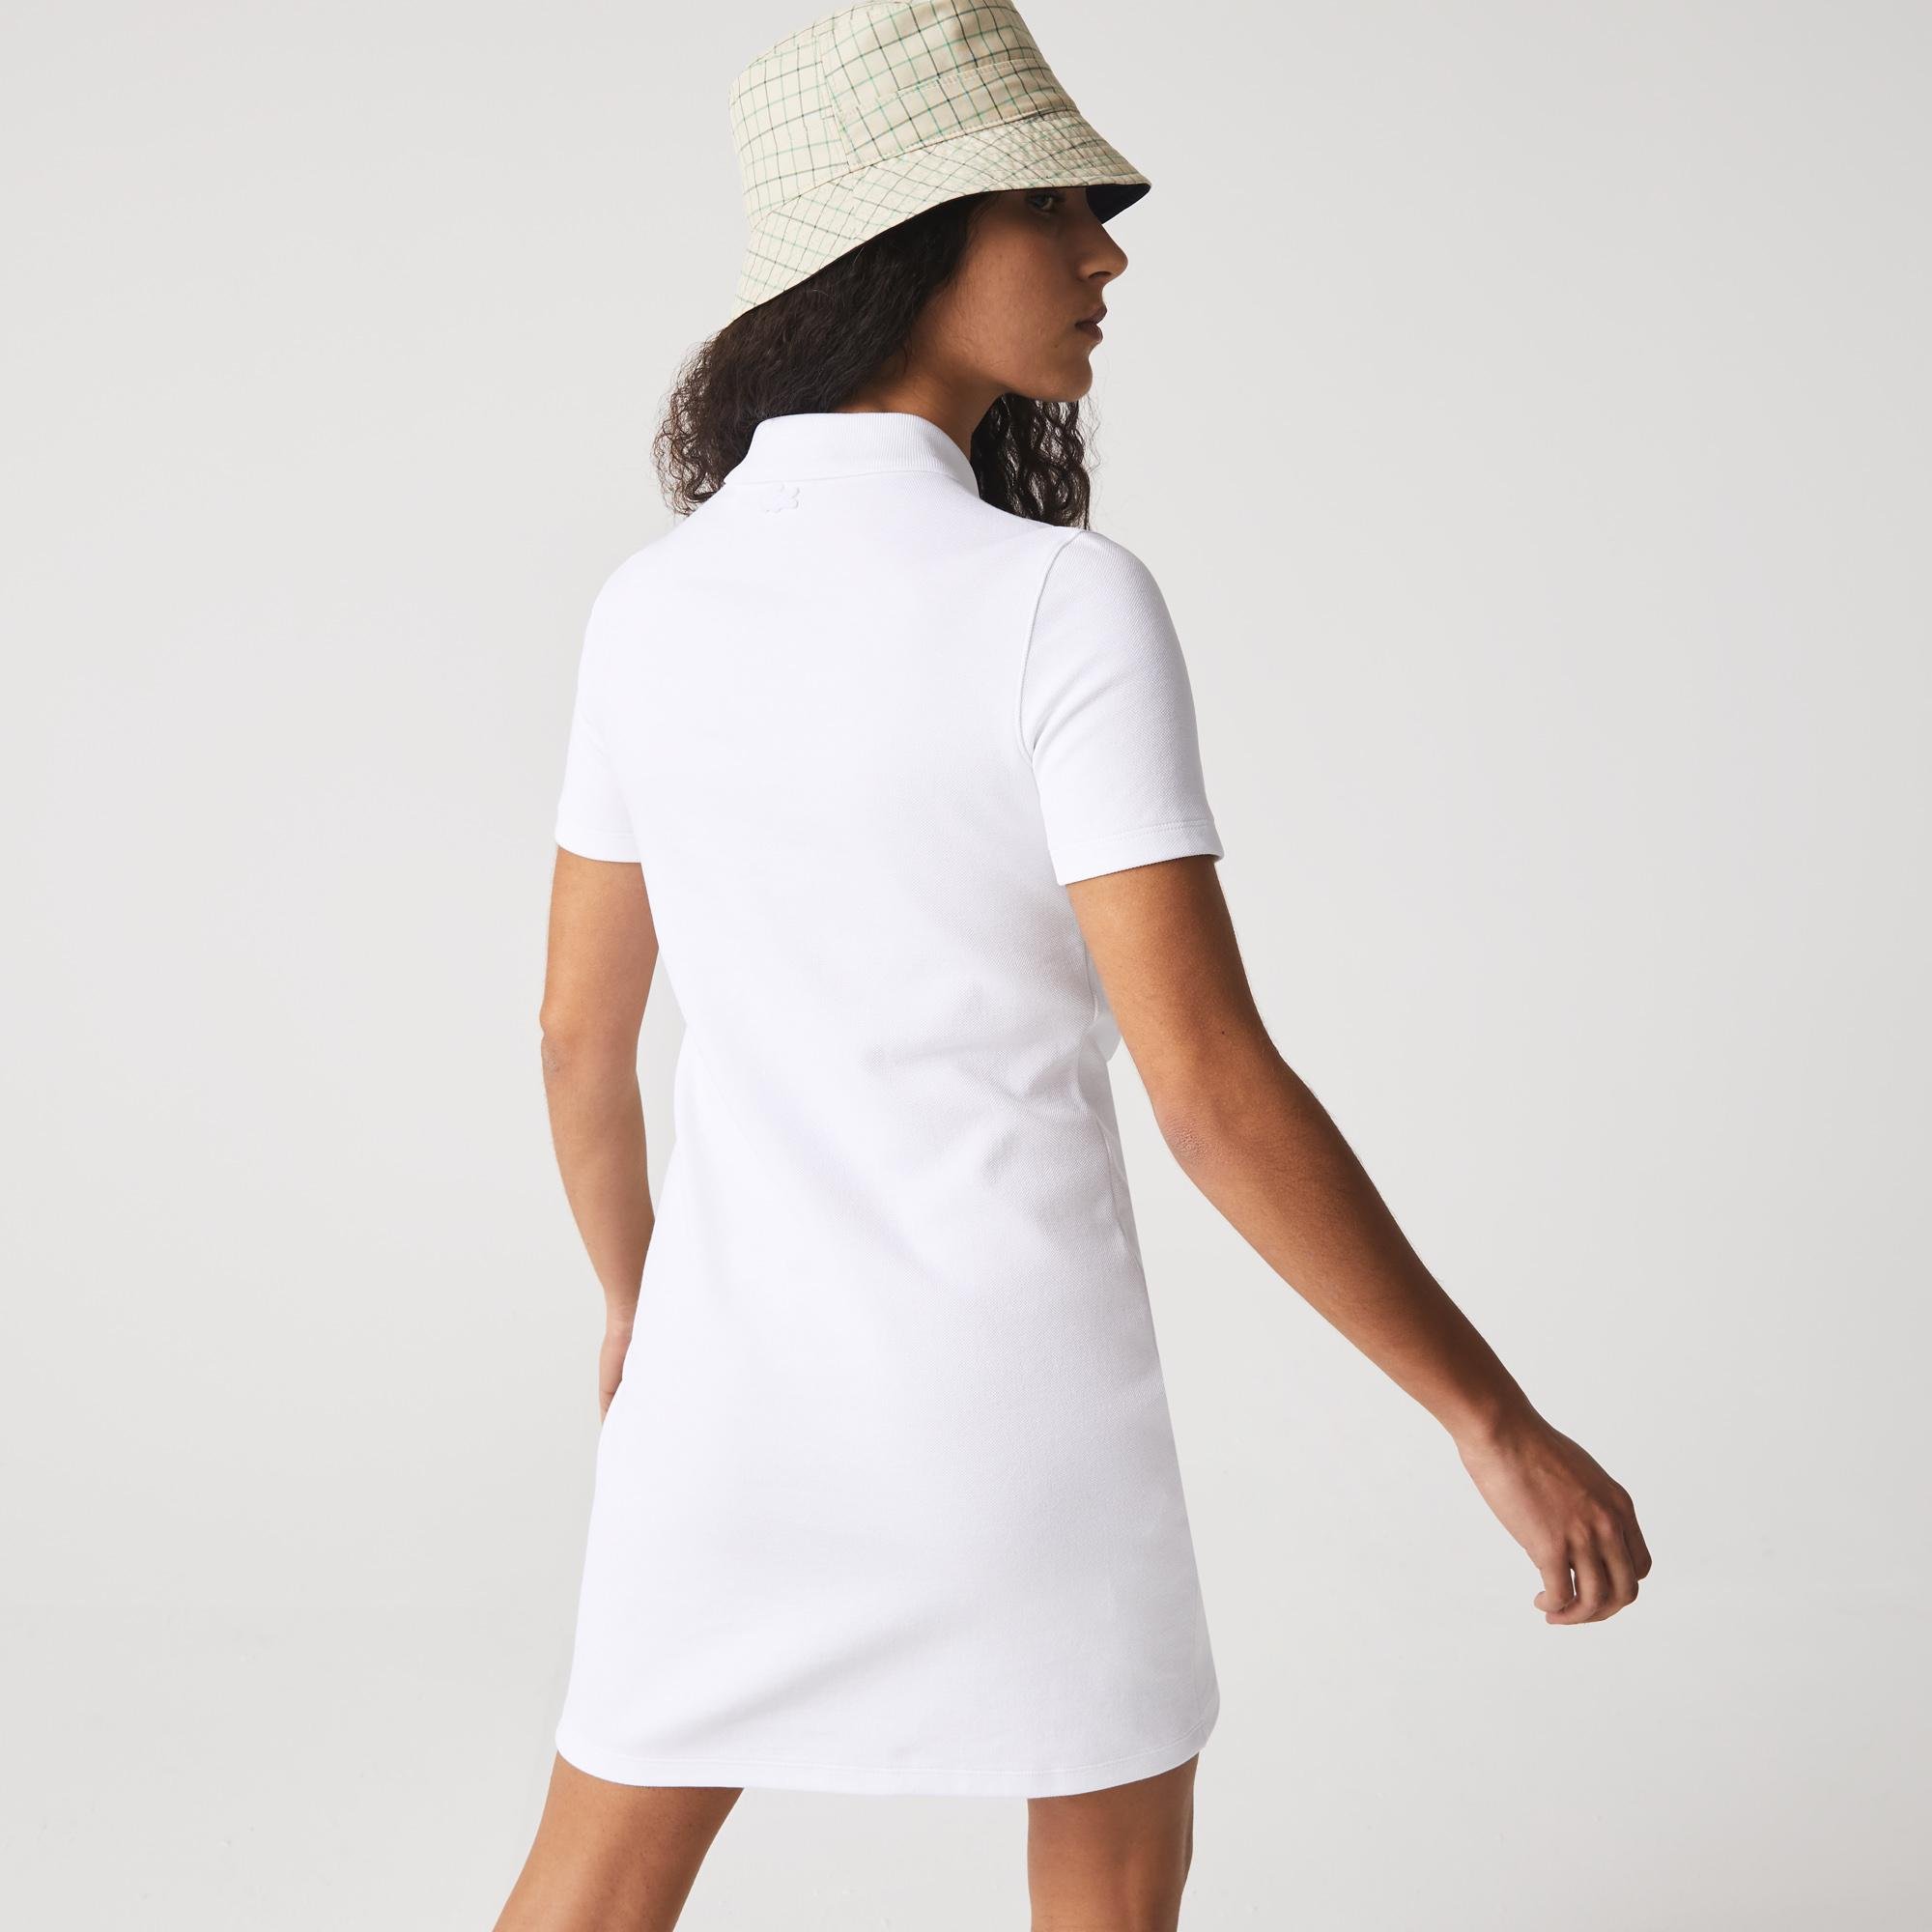 Lacoste Kadın Slim Fit Kısa Kollu Polo Yaka Beyaz Elbise